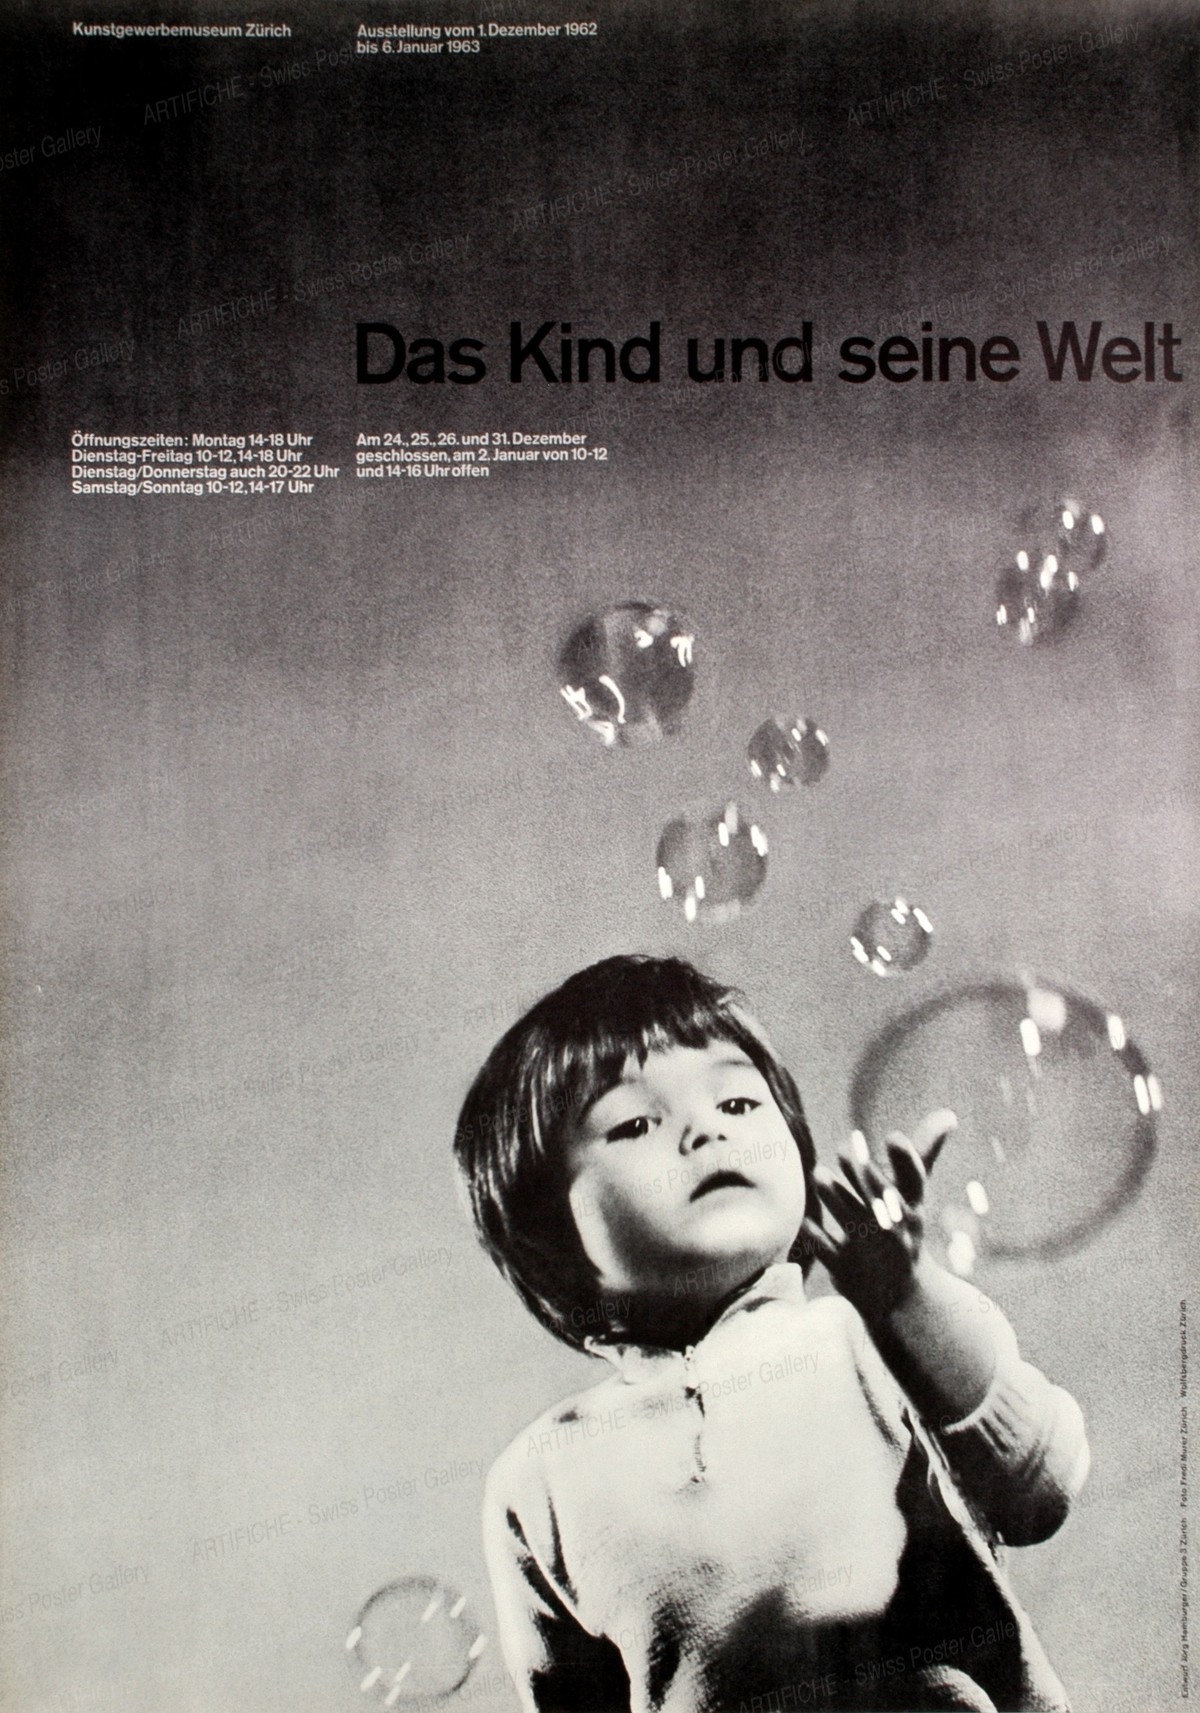 Das Kind und seine Welt – Kunstgewerbemuseum Zürich, Jörg Hamburger